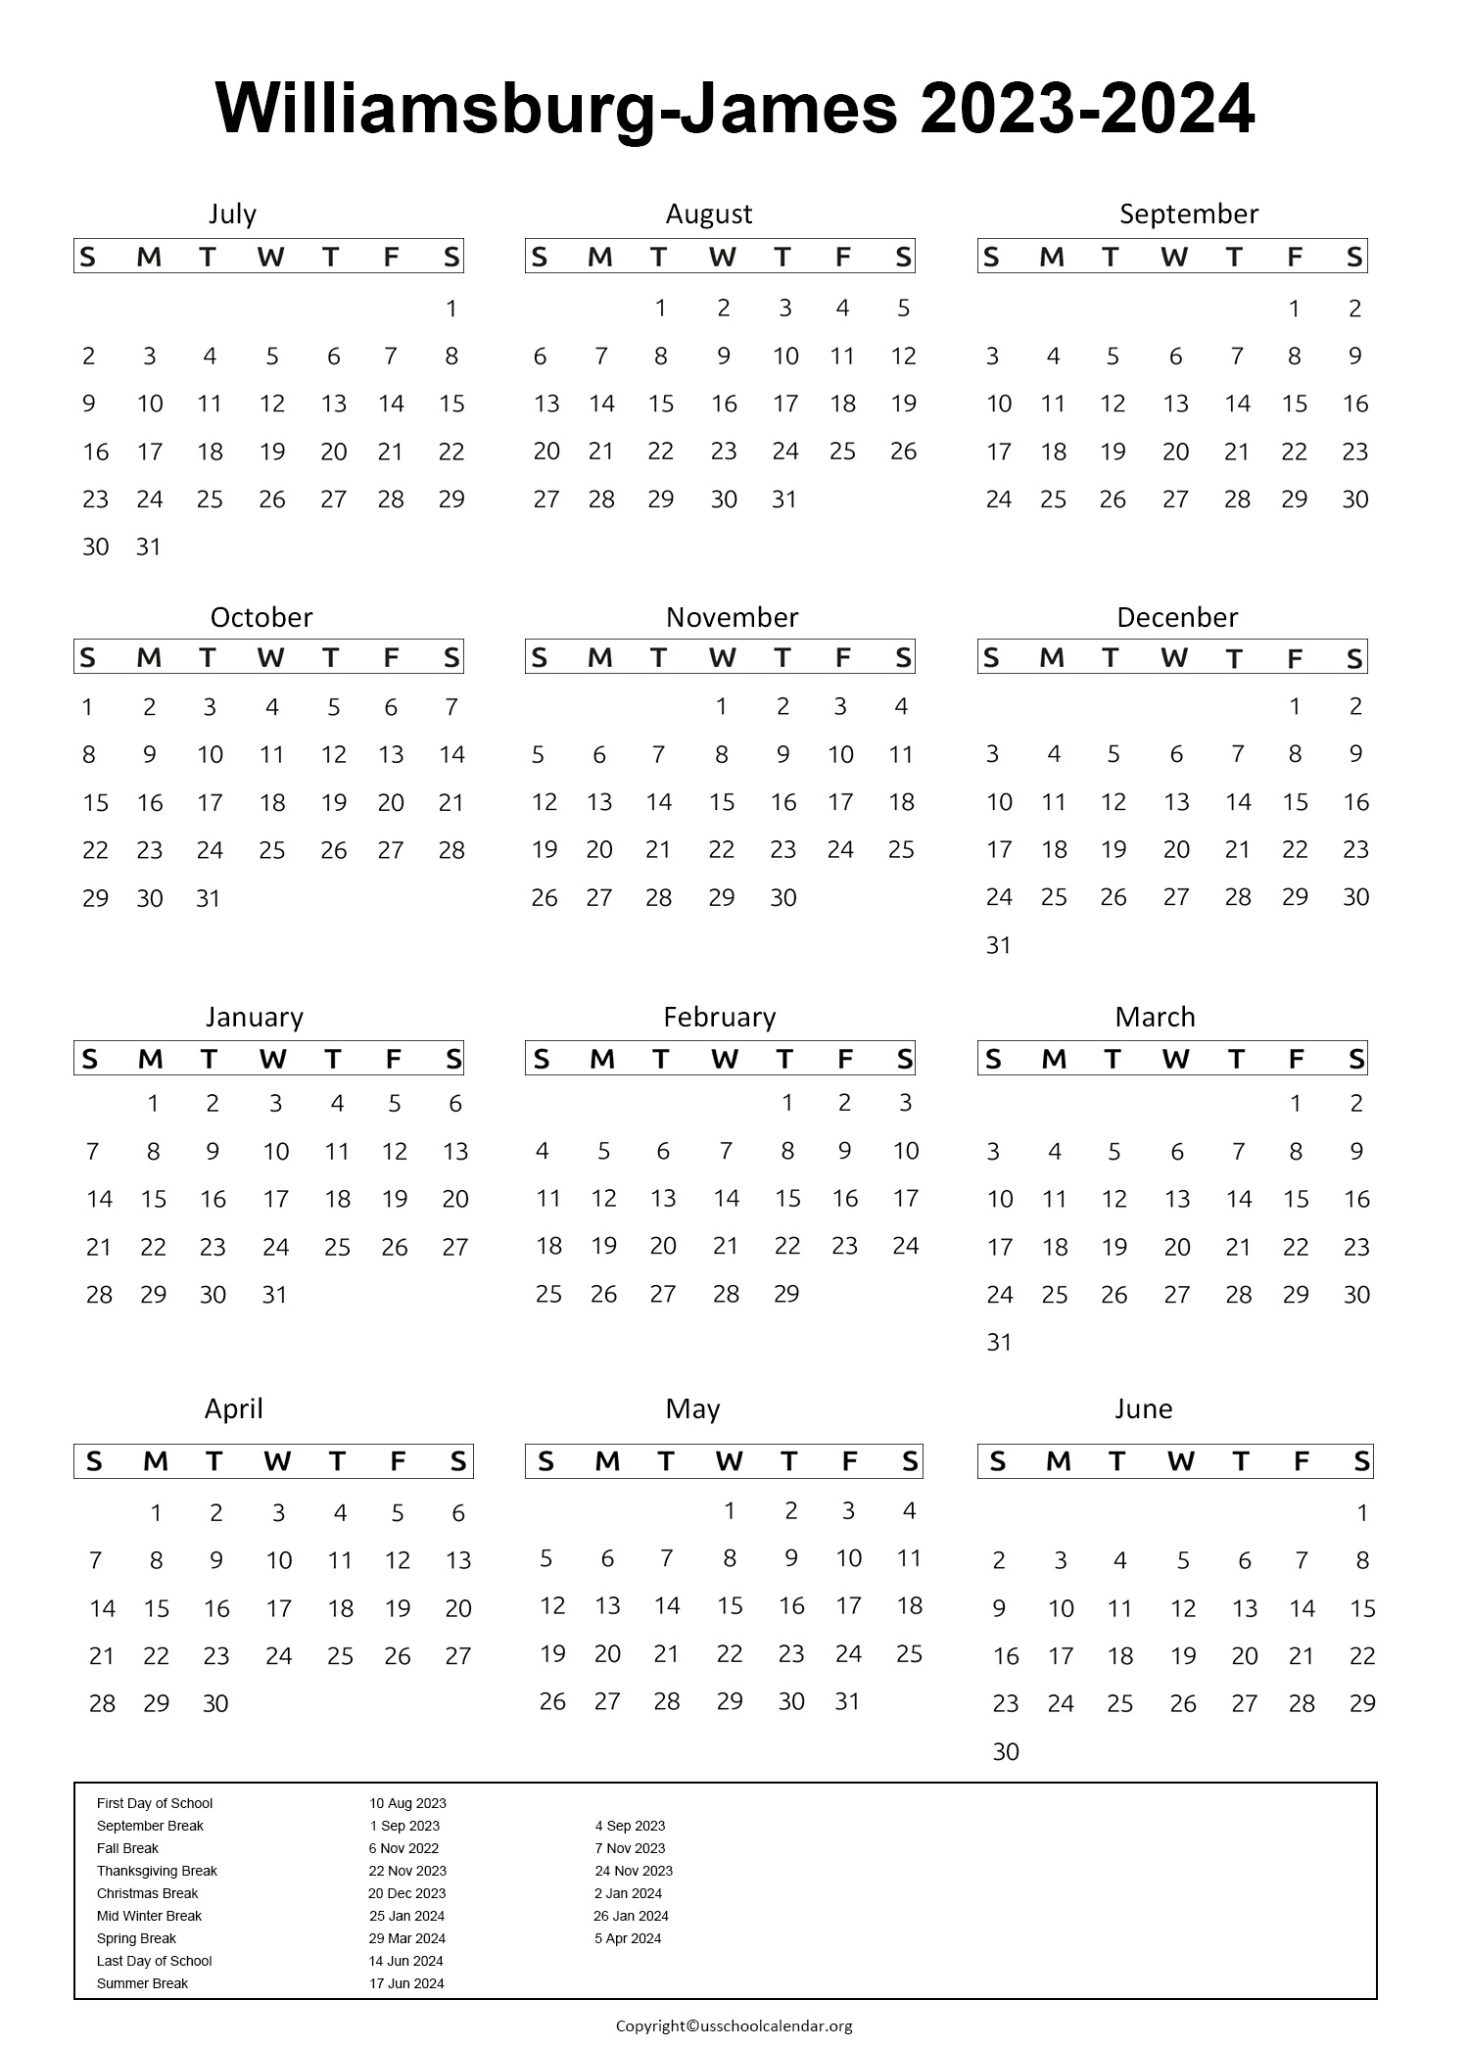 wjcc-schools-calendar-us-school-calendar